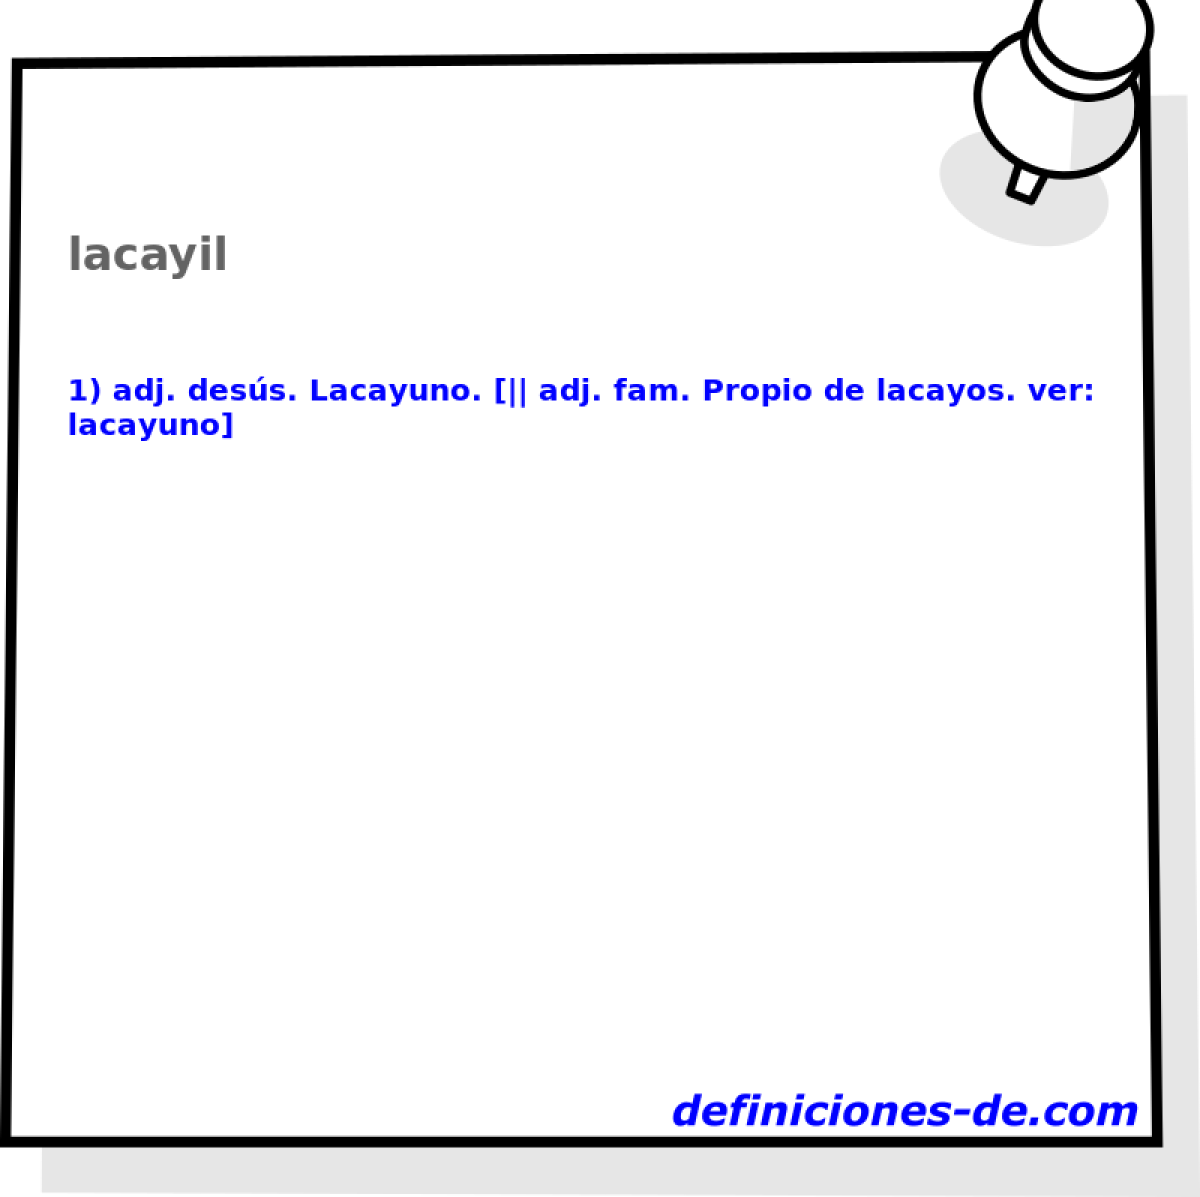 lacayil 